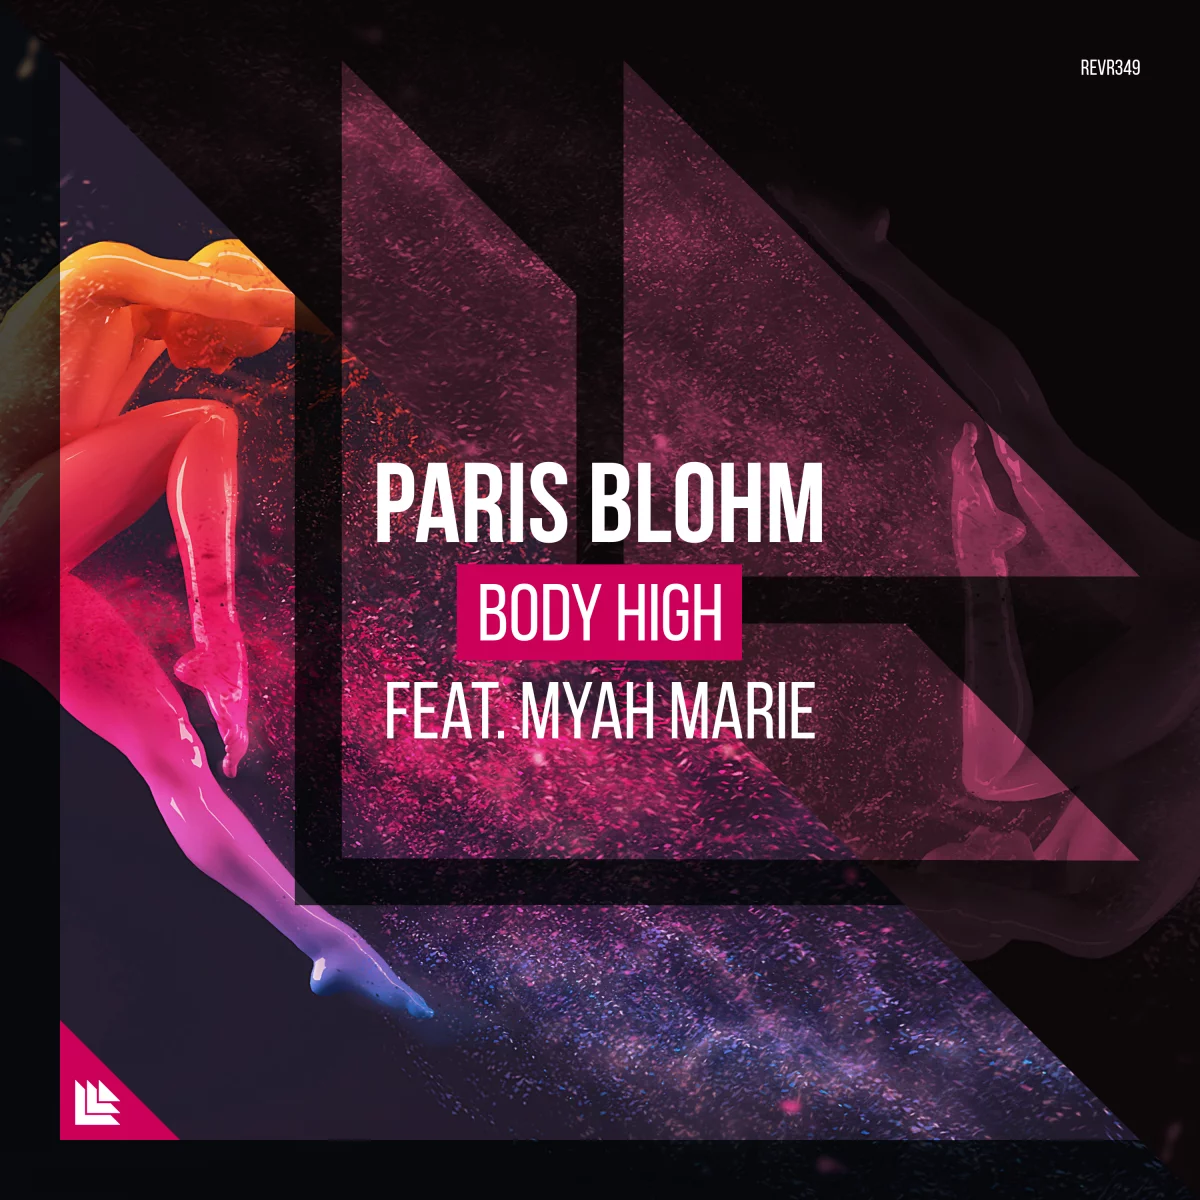 Body High - Paris Blohm⁠ feat. Myah Marie